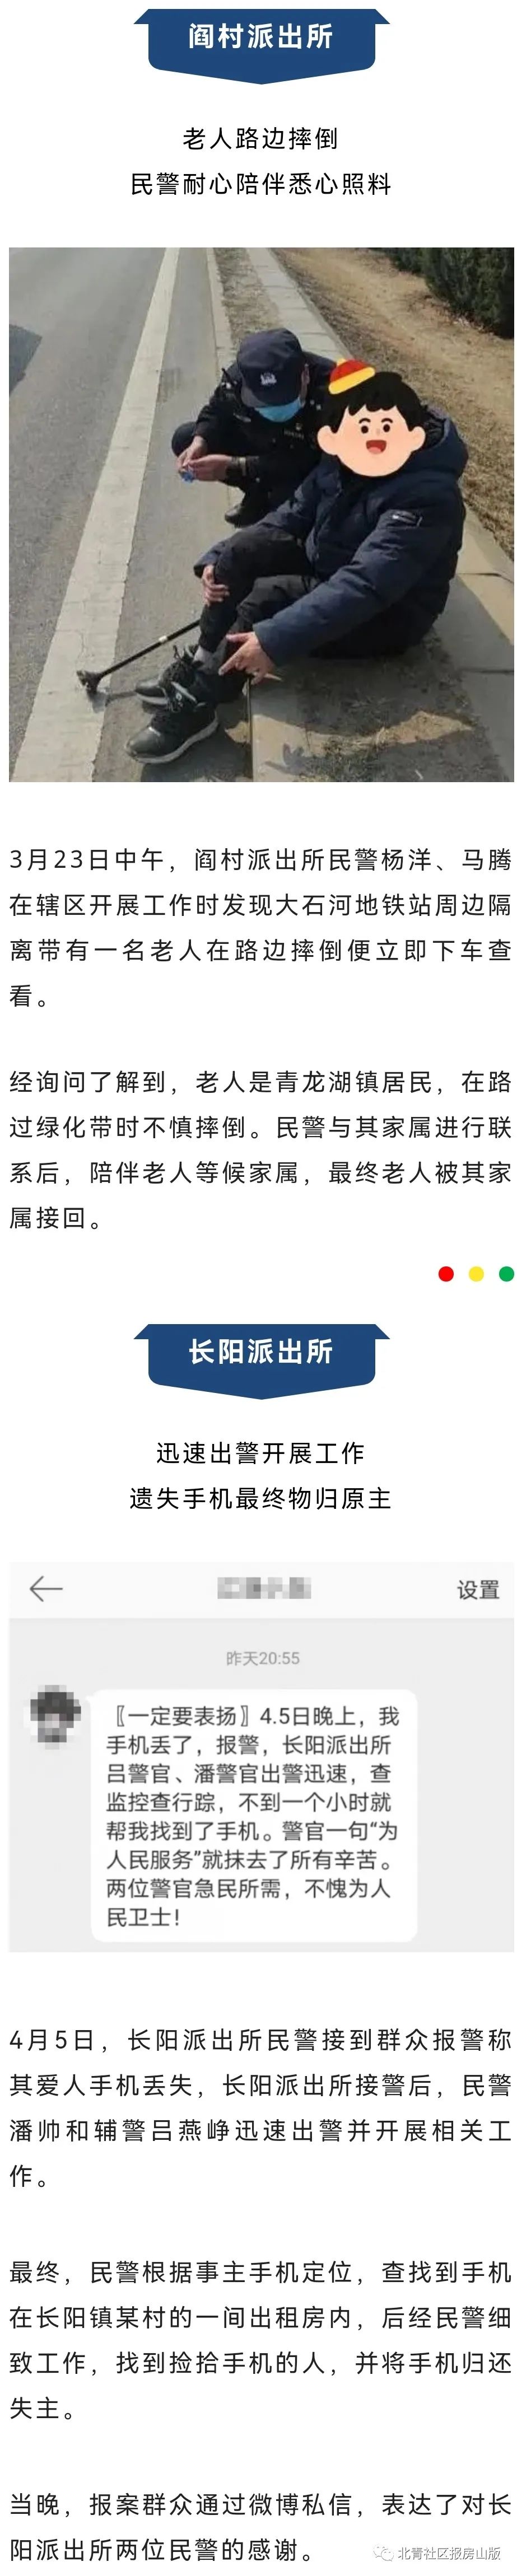 杭州爱秀教育这个公司怎么样5冲刺新东方急剧7月去年高管减速垄断联通巨无霸流量卡怎么样